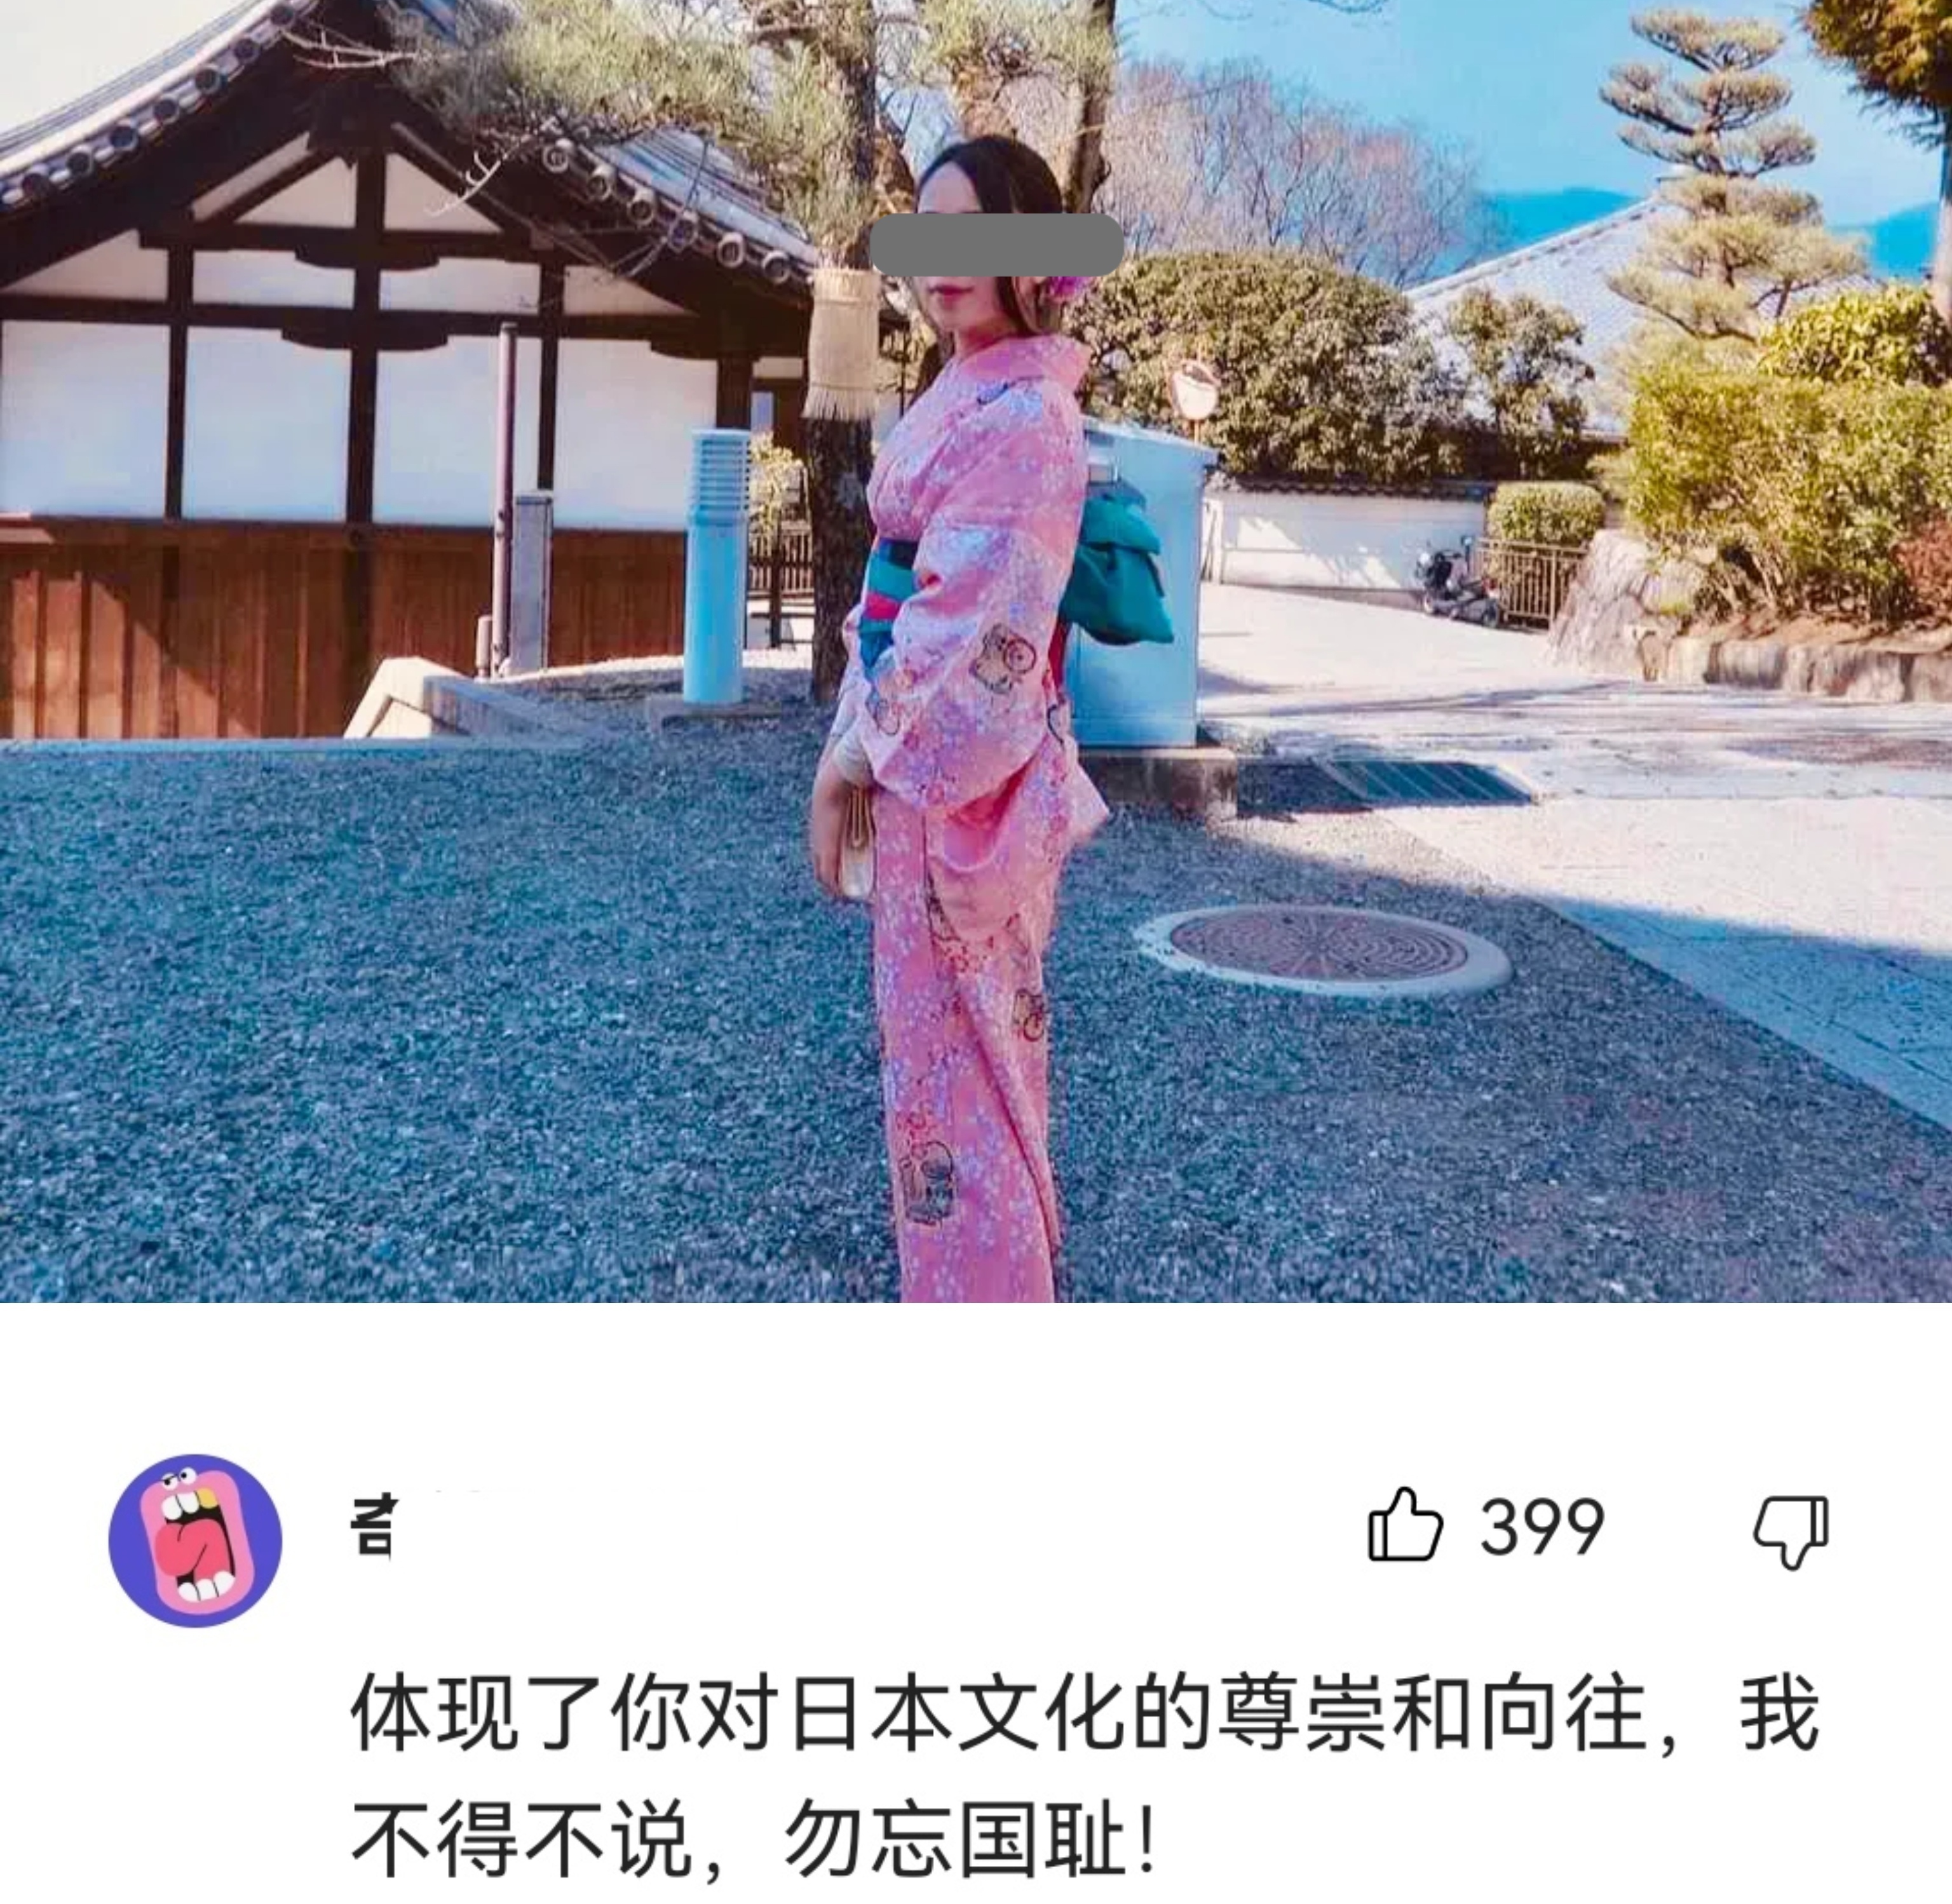 在日本穿和服被骂惨 中国女孩和服照惹争议 网友质疑其发文目的